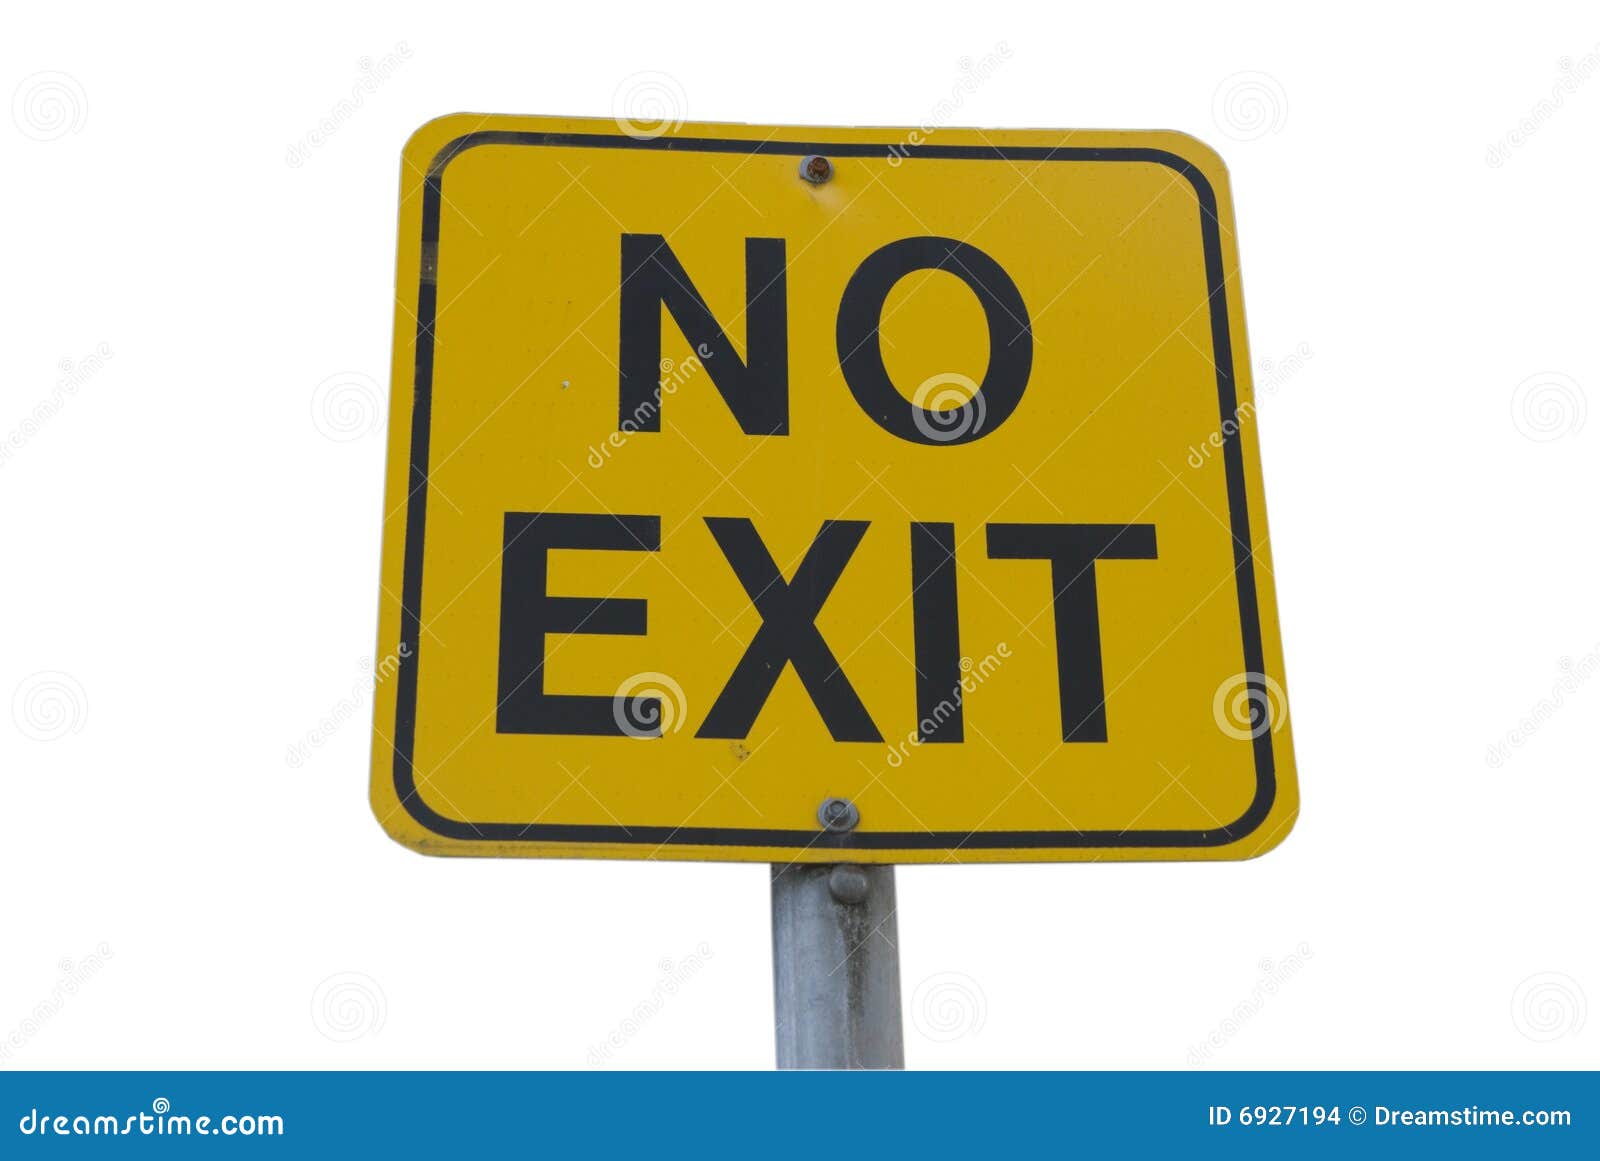 clip art no exit - photo #16